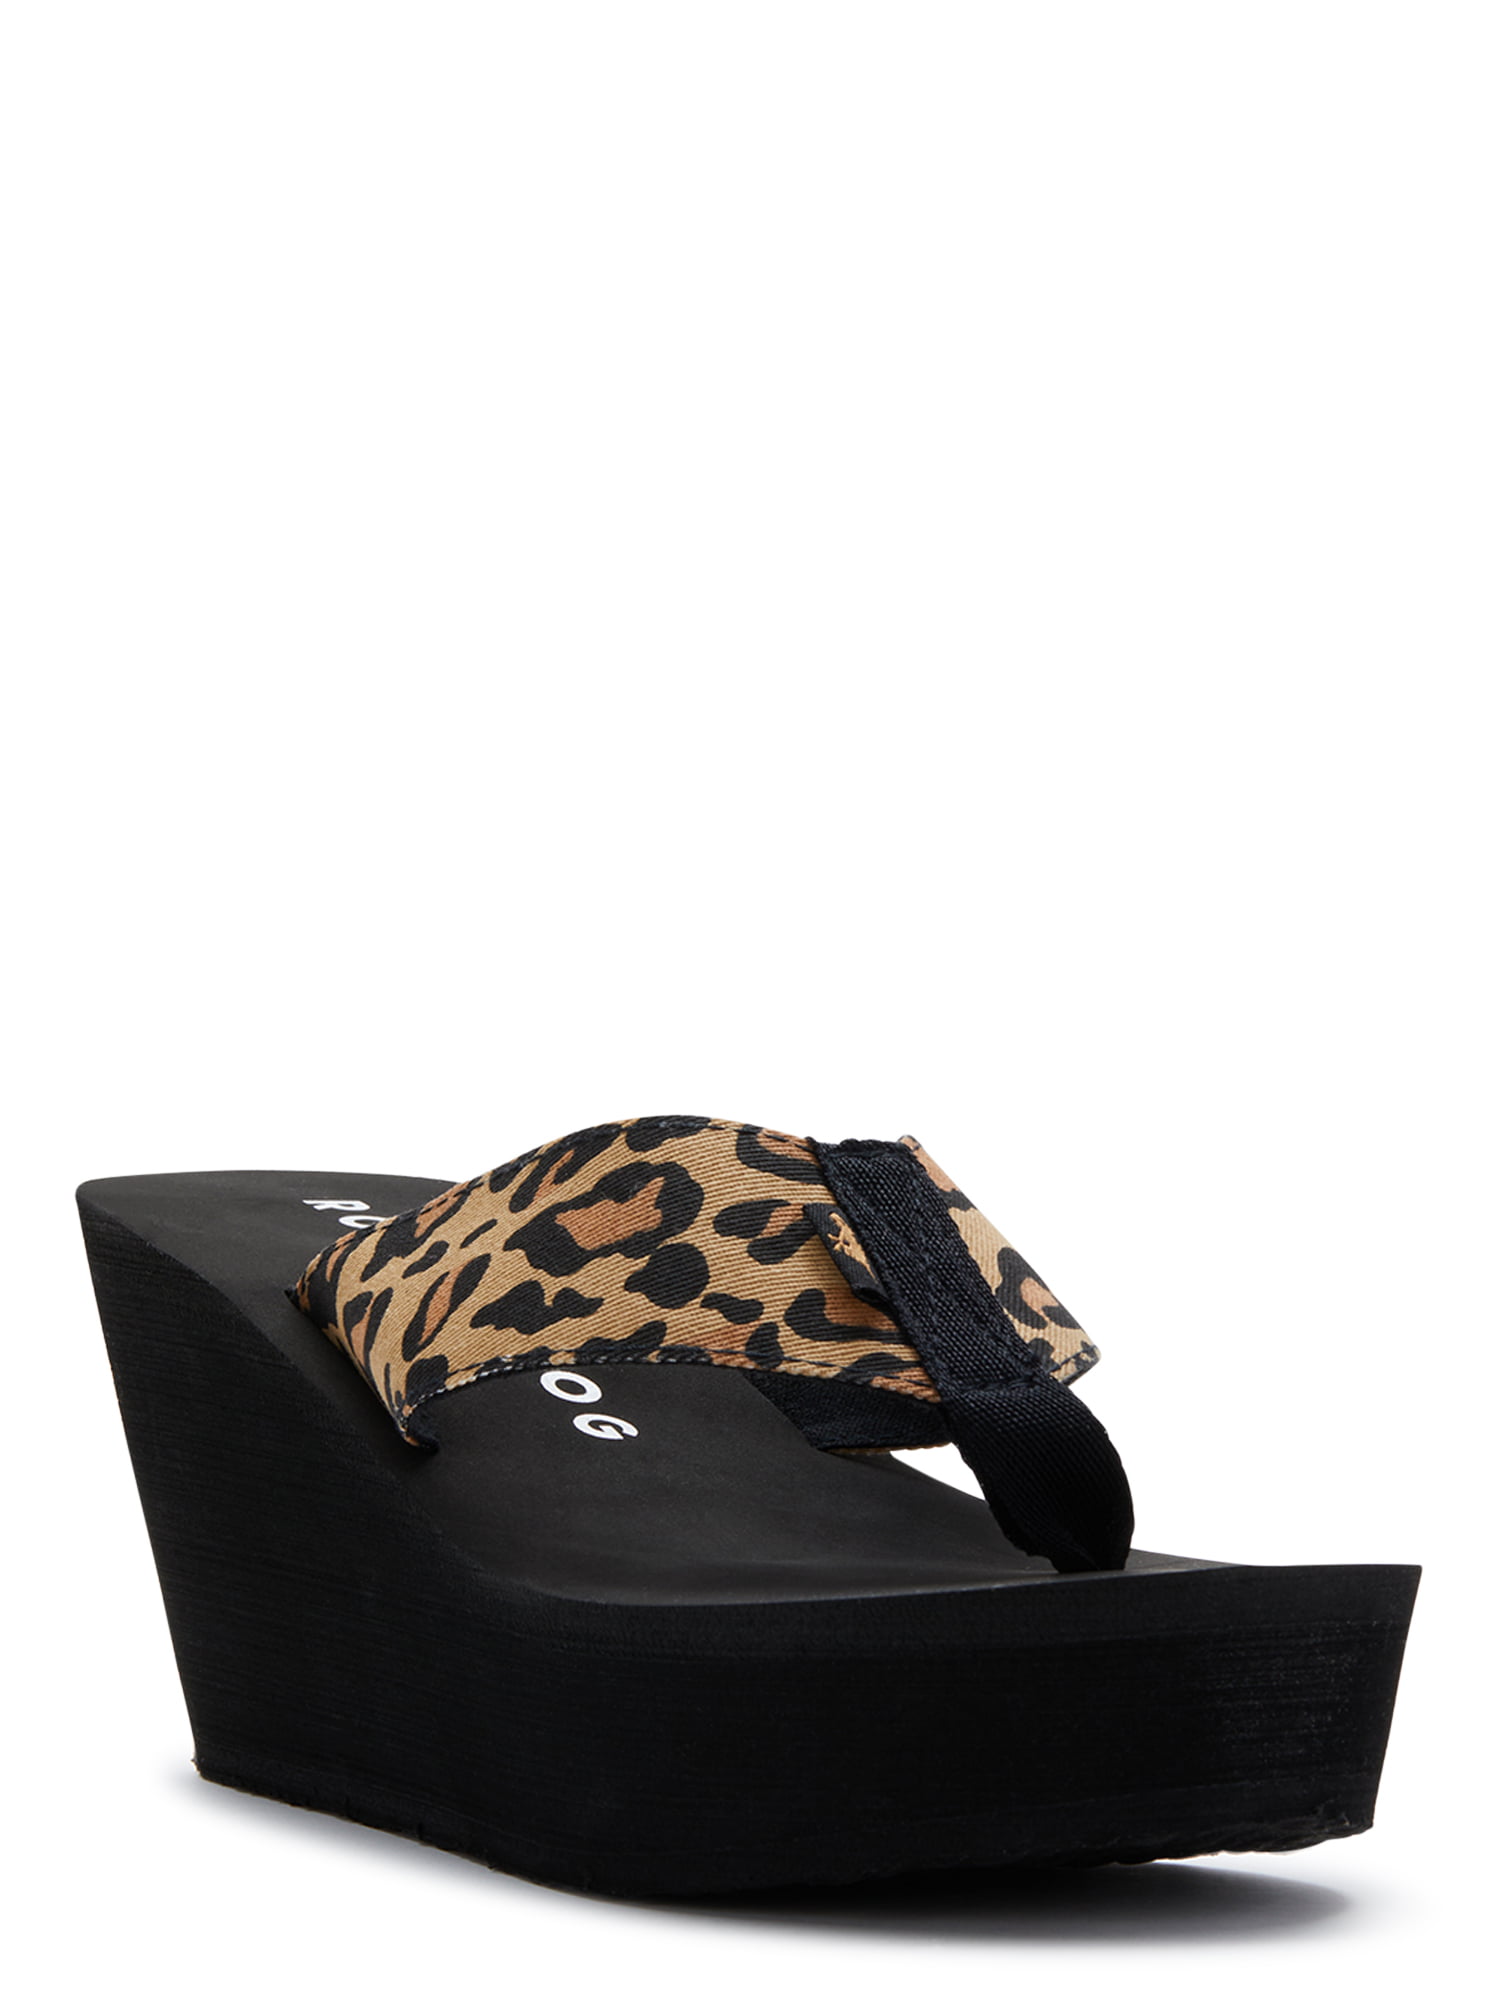 Rocket Dog Diver Leopard Print Wedge Platform Thong Sandals (Women's) -  